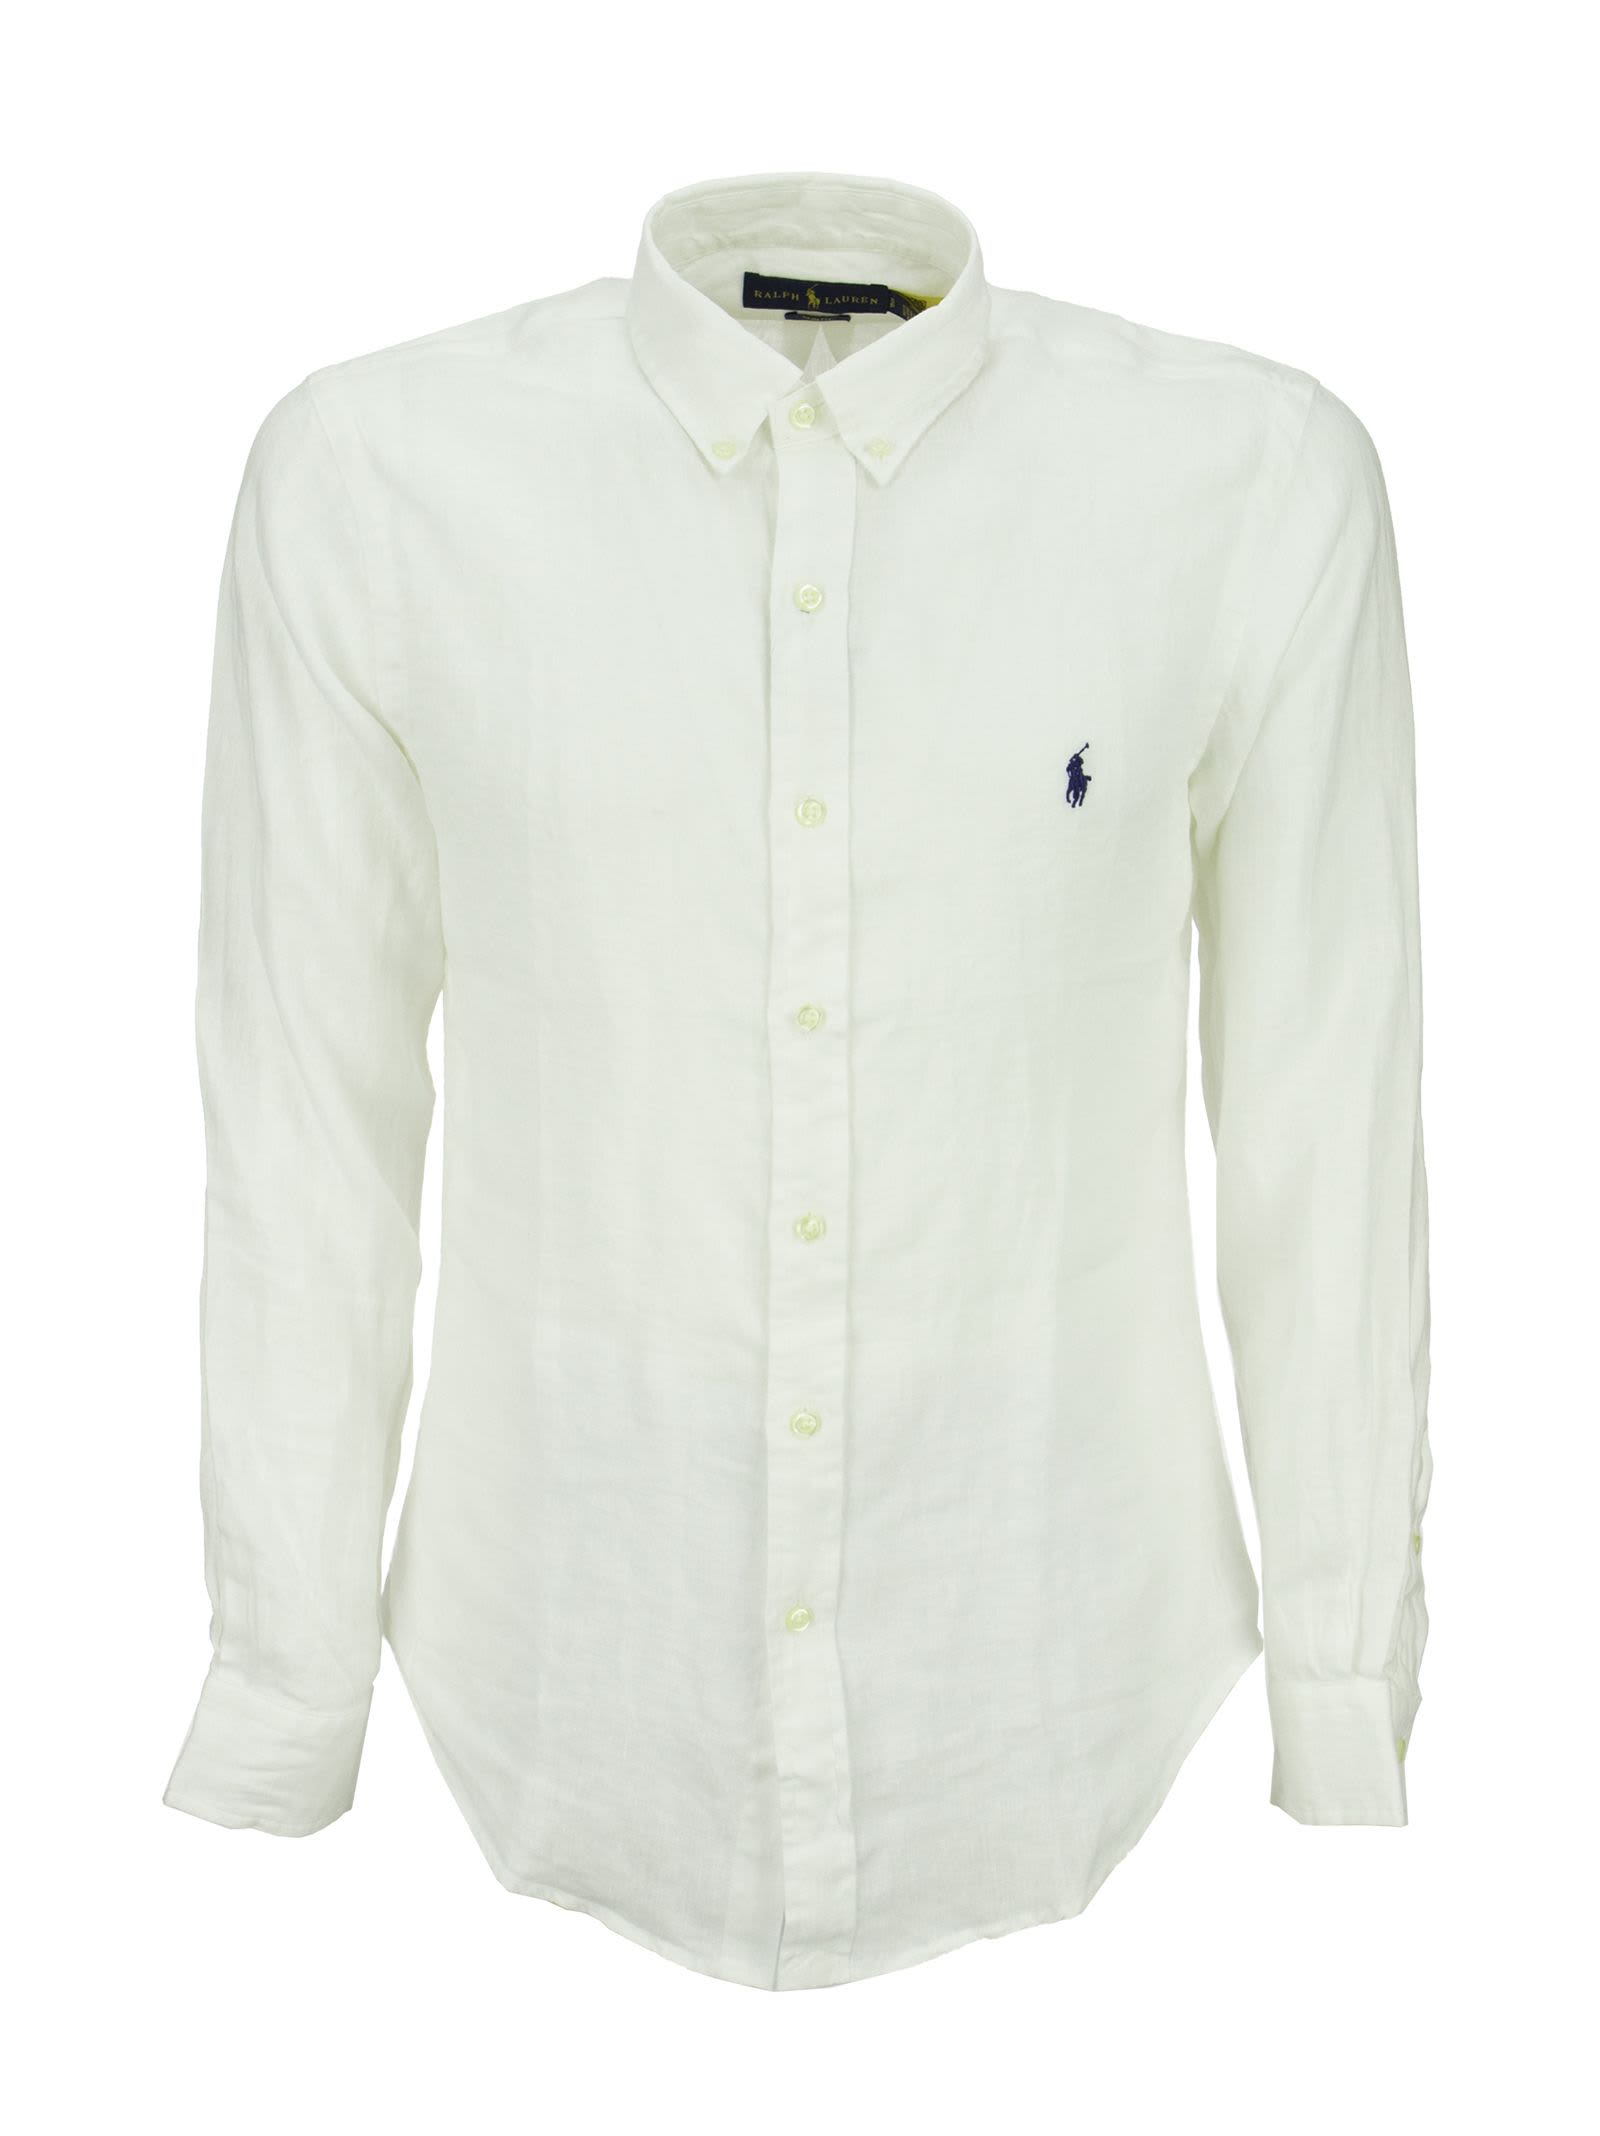 Polo Ralph Lauren Slim Fit Linen Shirt